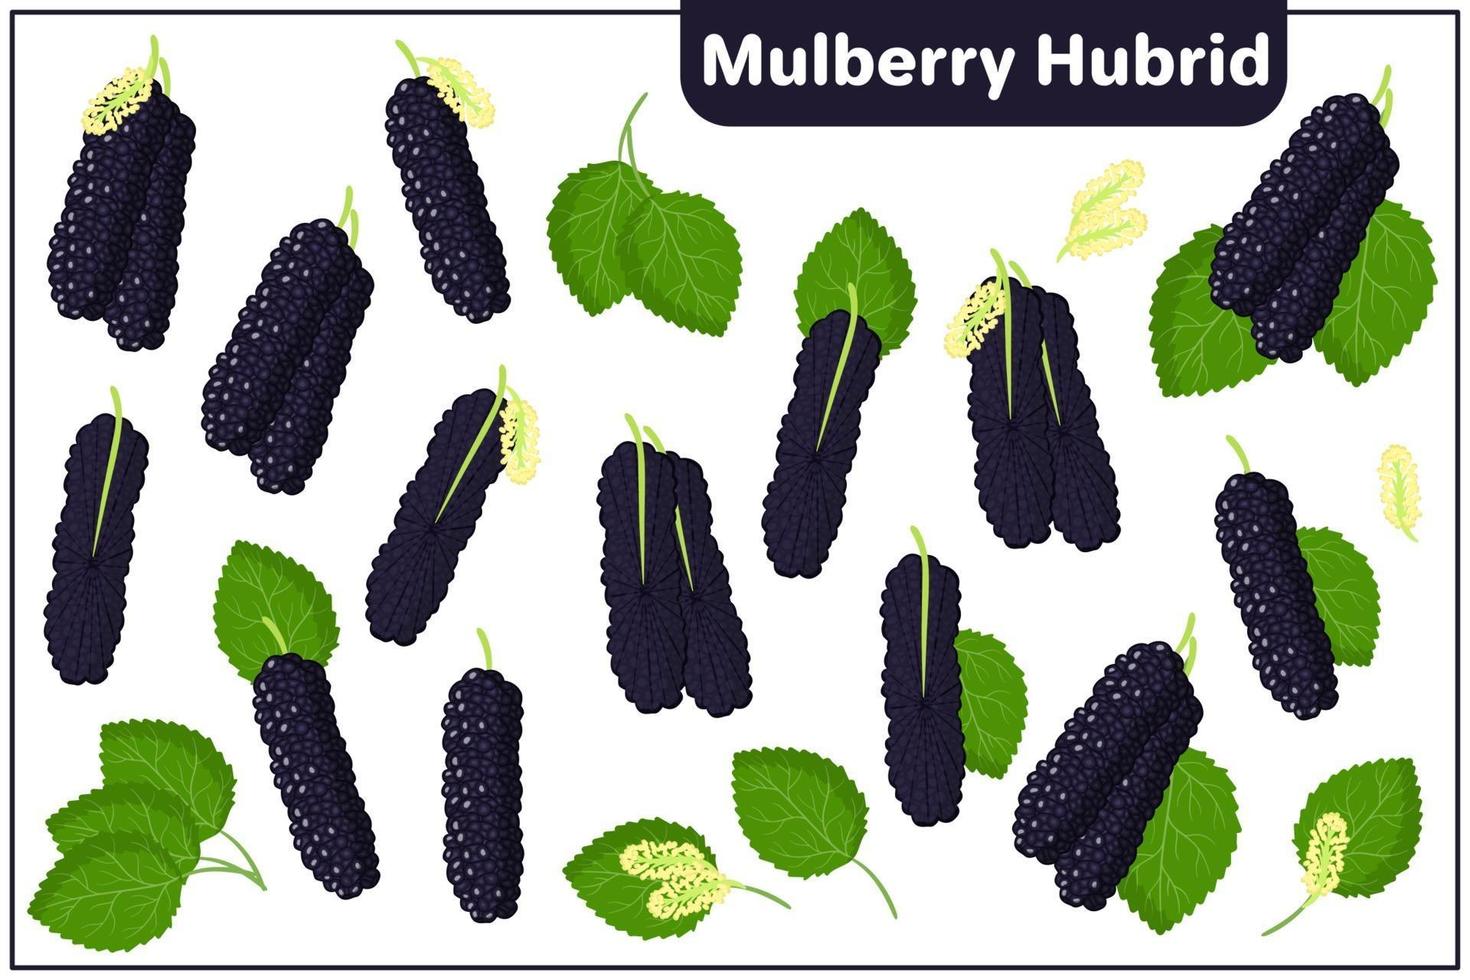 uppsättning vektor tecknad illustrationer med mulberry hybrid exotiska frukter, blommor och blad isolerad på vit bakgrund